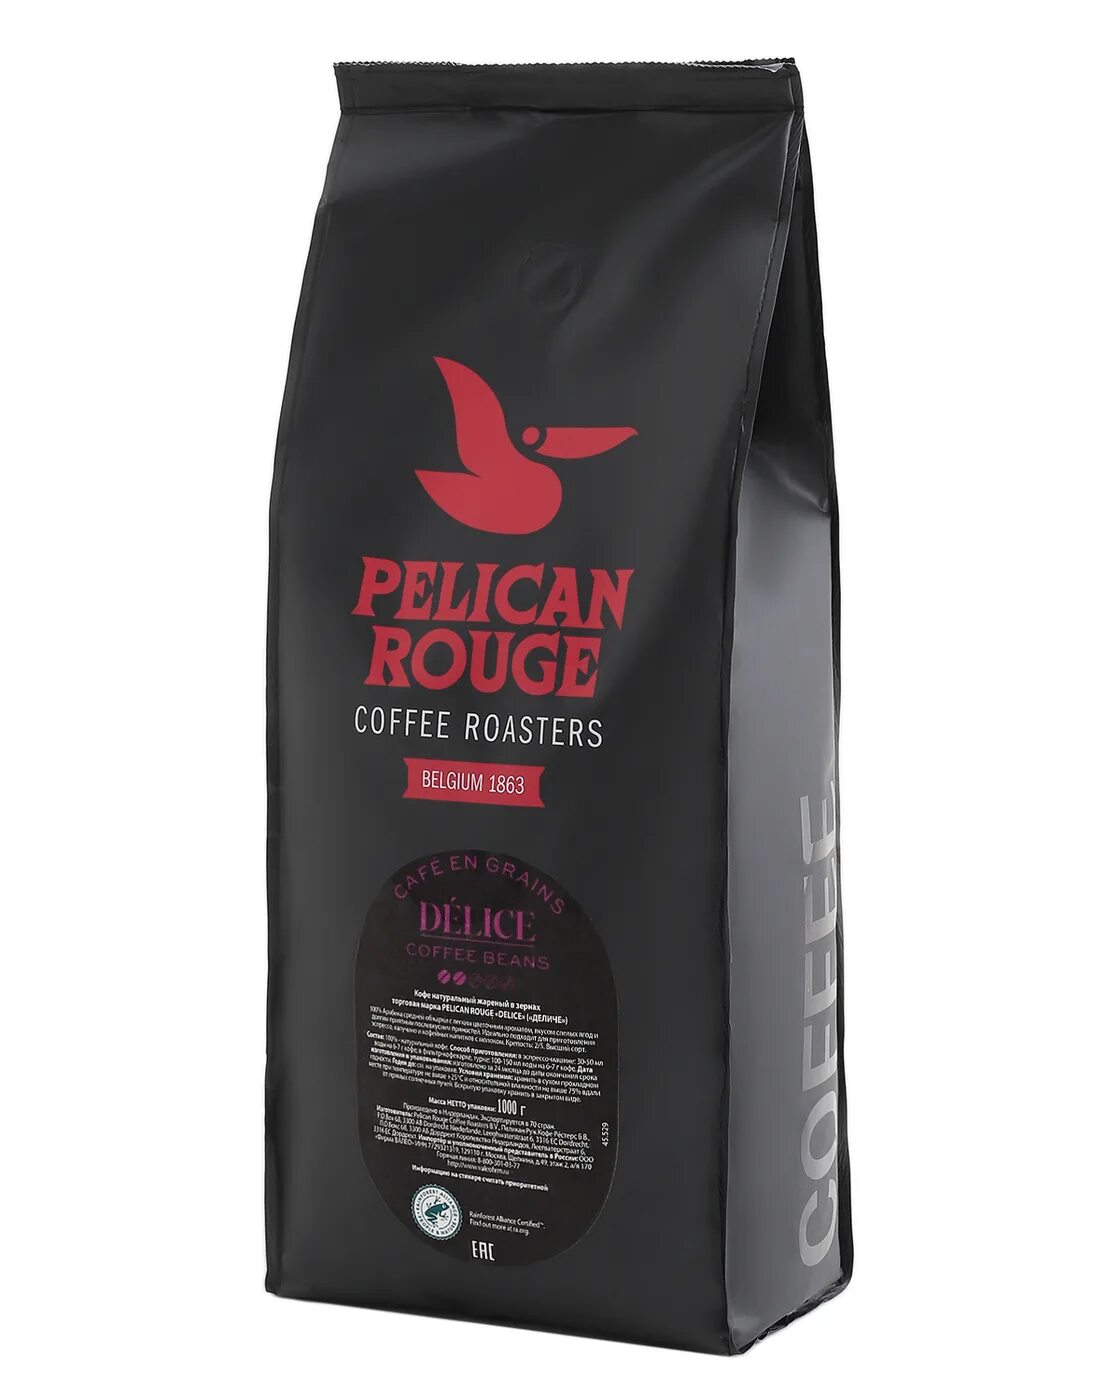 Кофе в зернах 1 кг для кофемашин. Кофе в зернах Pelican rouge Delice. Кофе в зернах Pelican rouge Evaristo. Кофе в зернах Pelican rouge Delice 1 кг. Кофе в зернах Pelican rouge Evaristo, 1 кг.